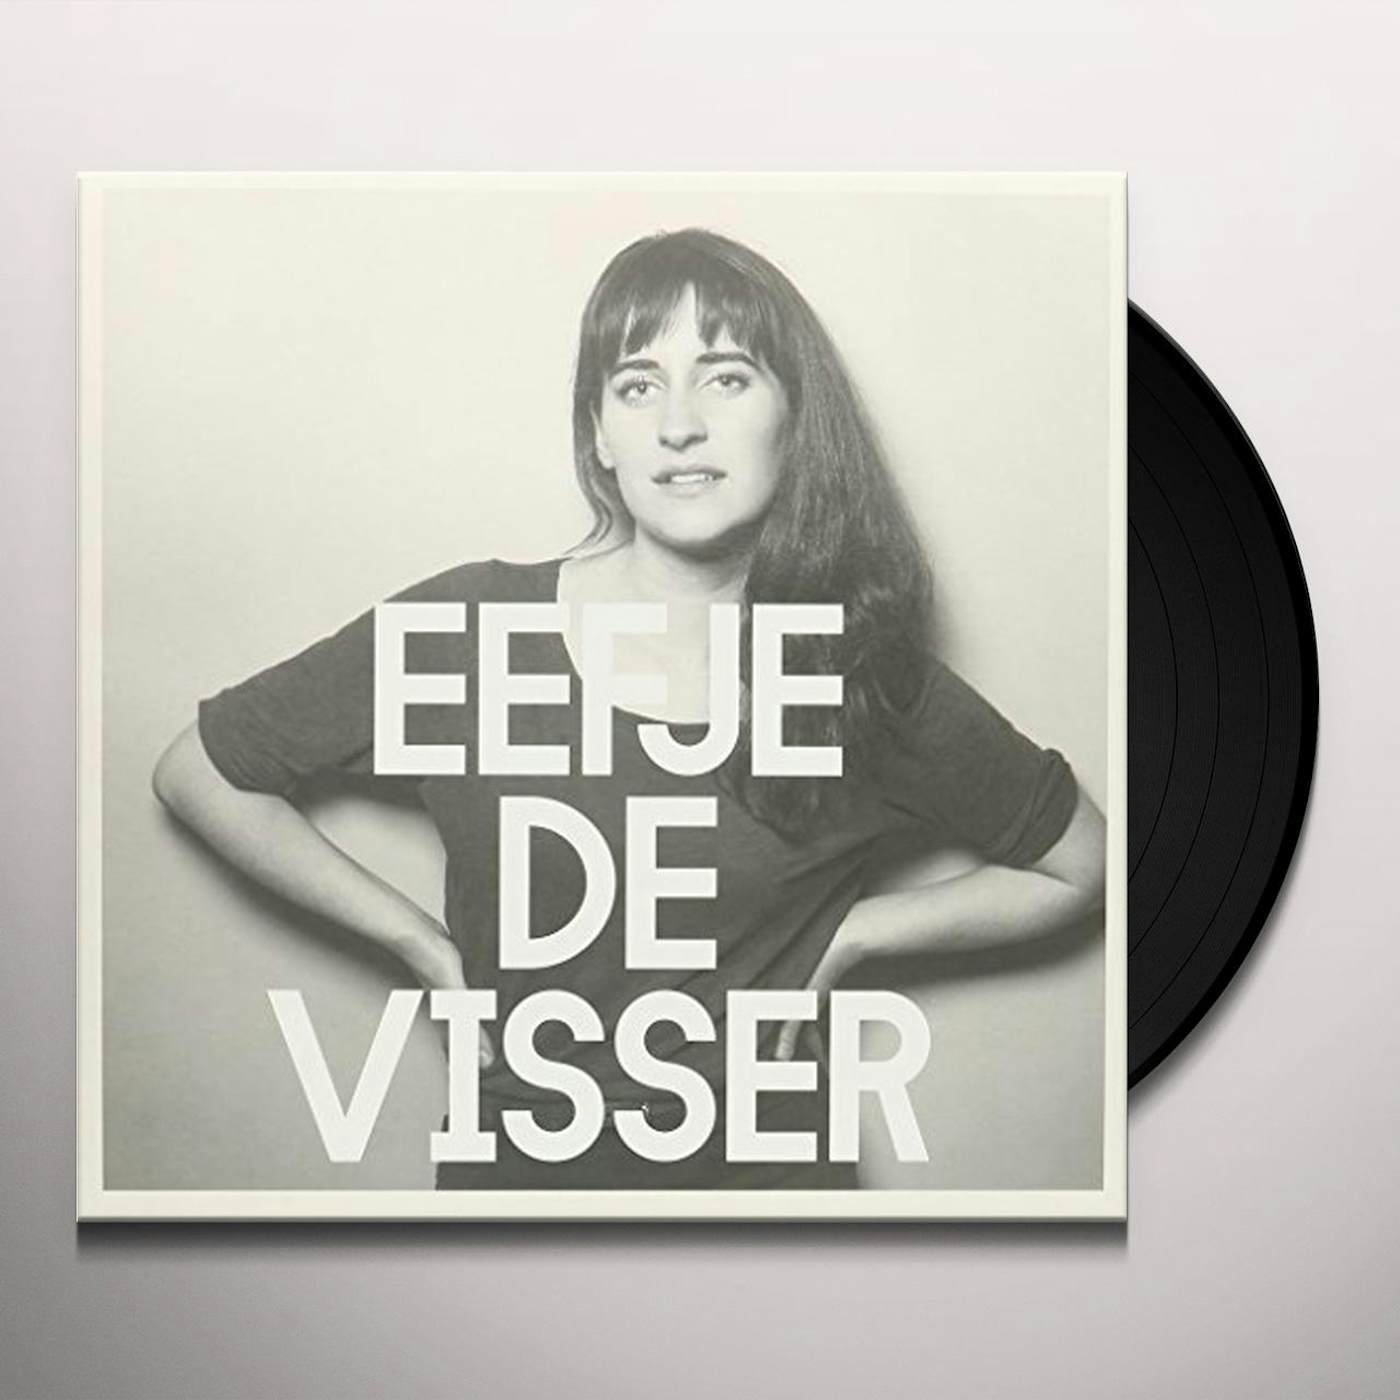 Eefje de Visser Het is Vinyl Record